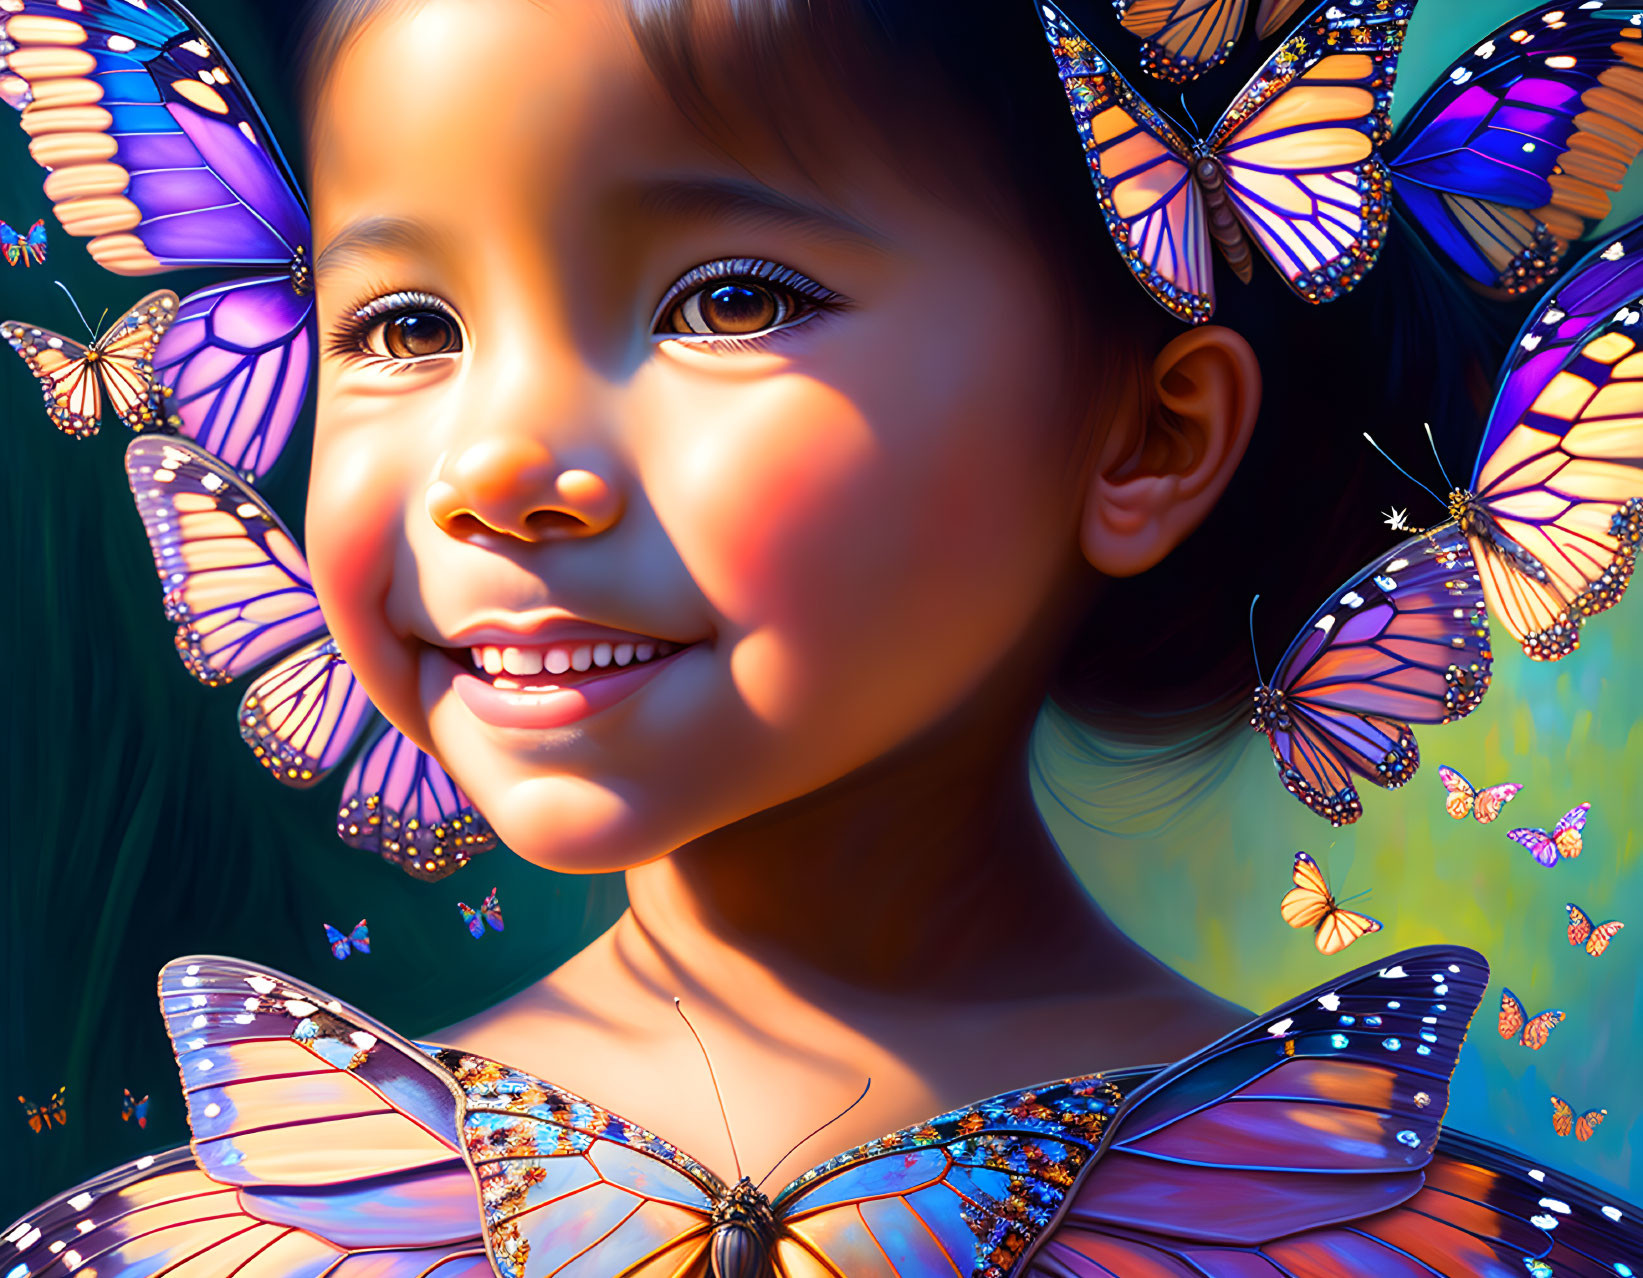 Butterfly queen: